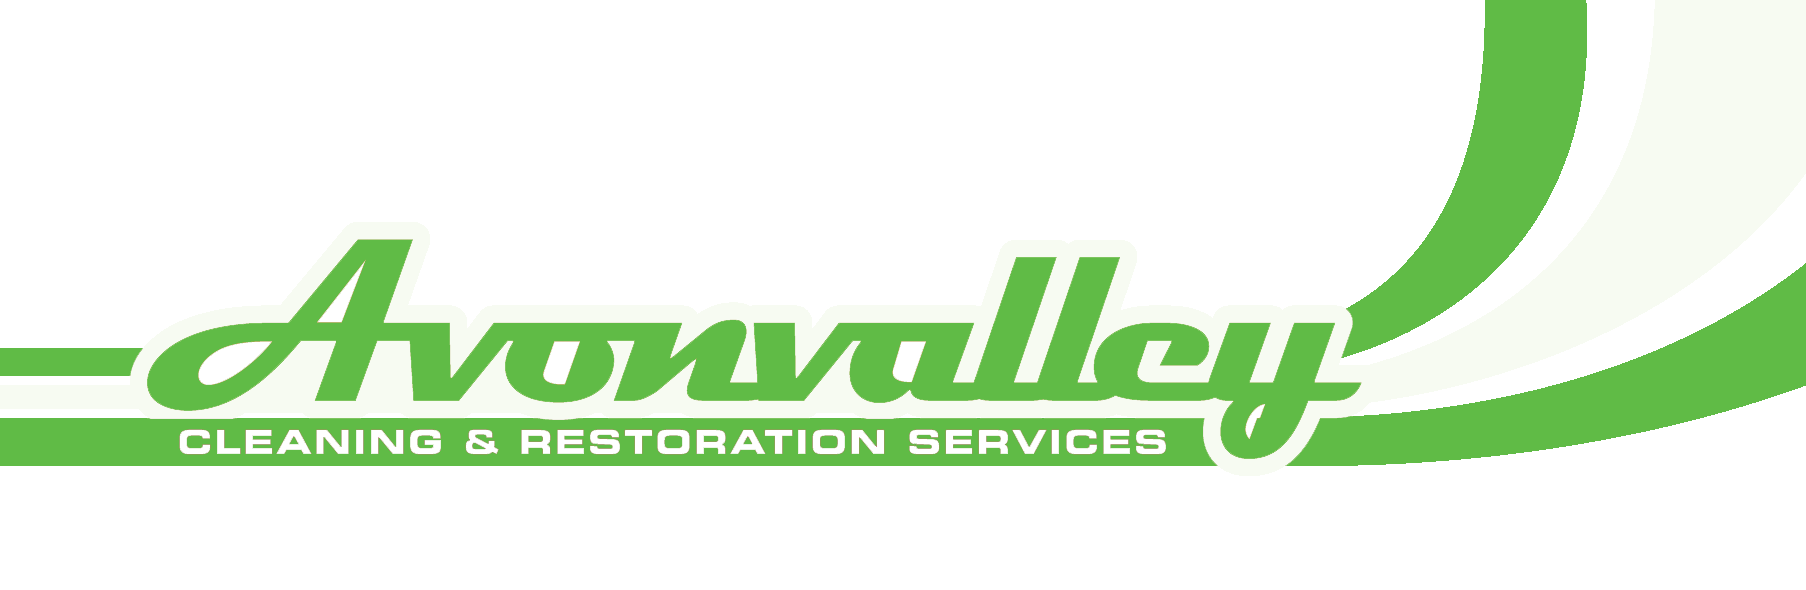 Avon Valley Cleaning & Restoration Services logo